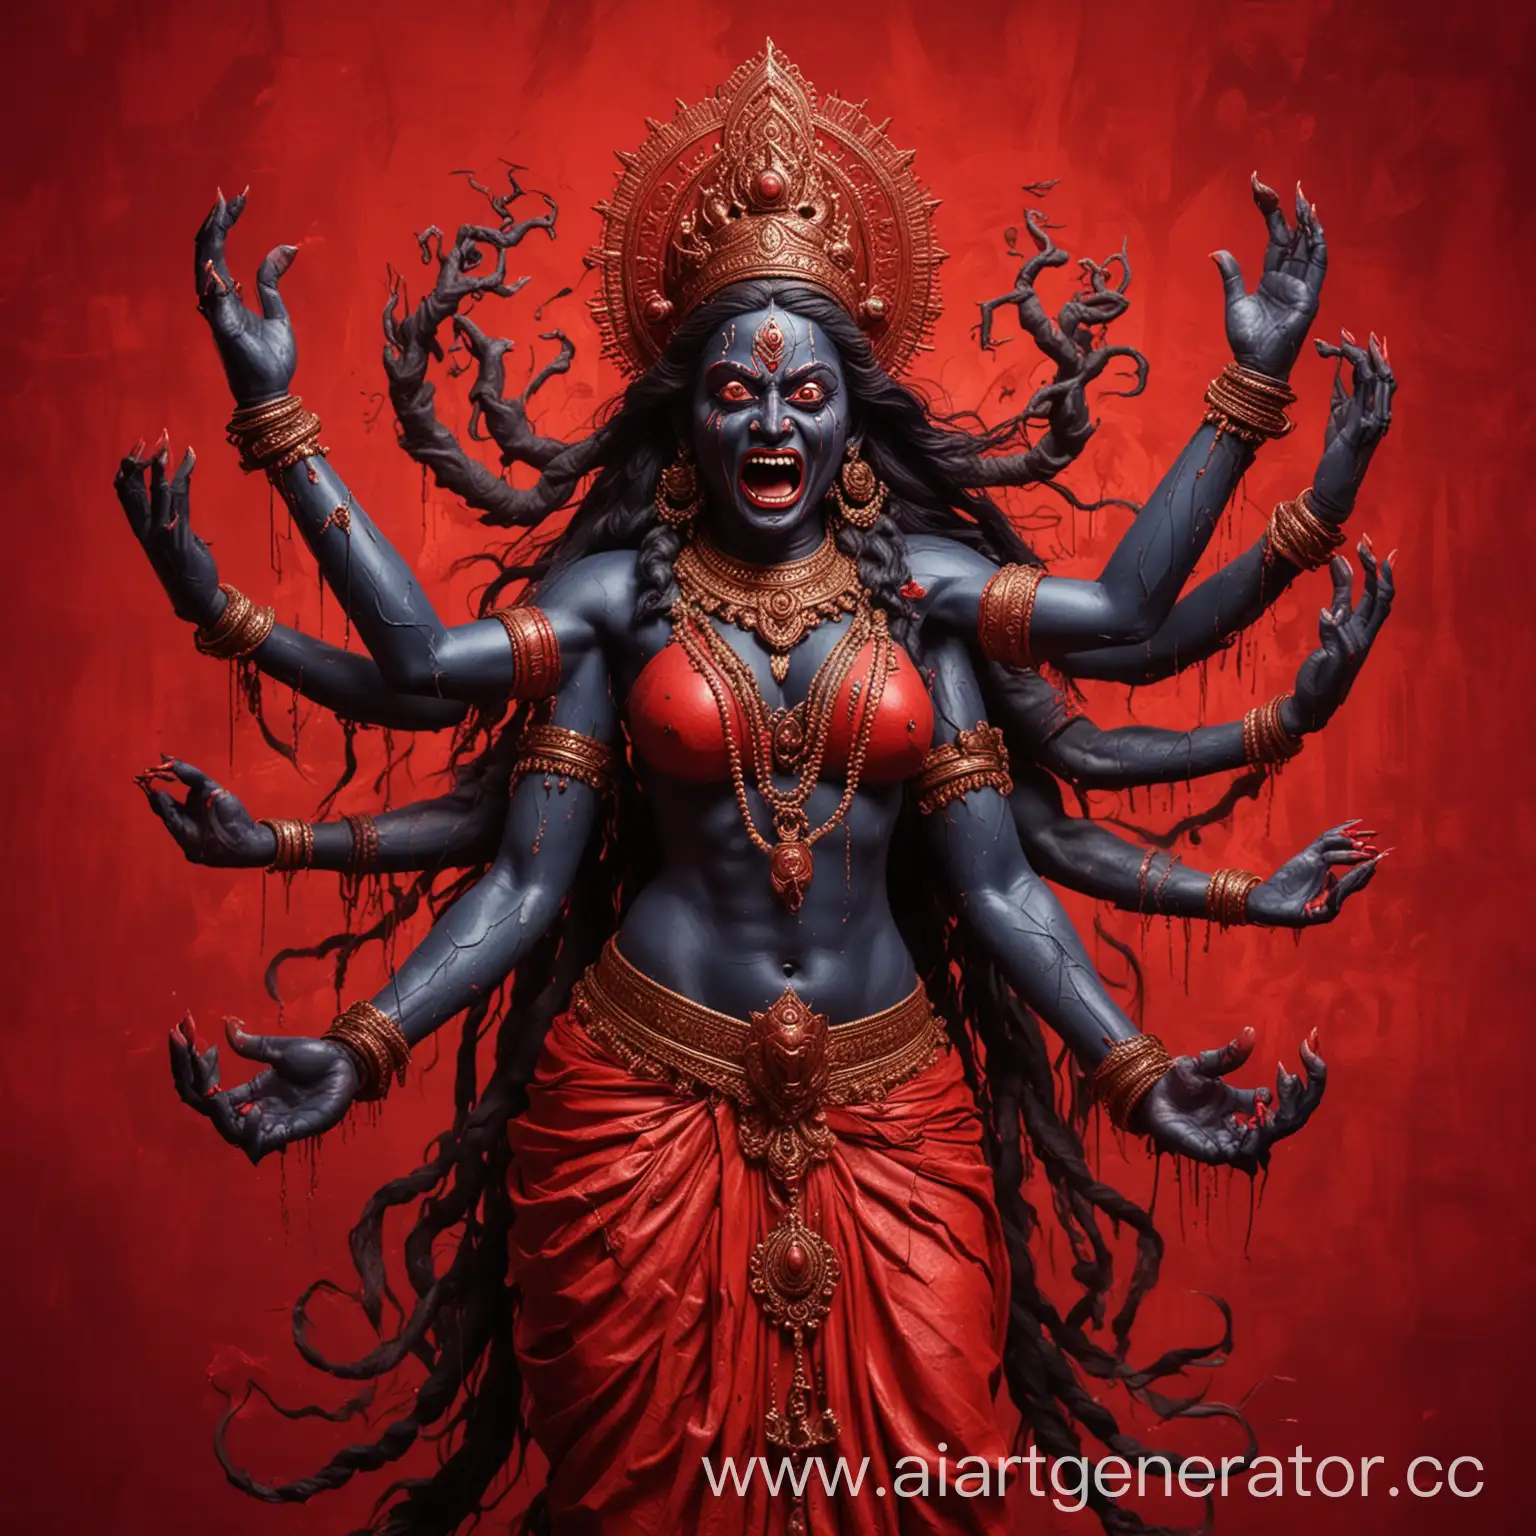 богиня кали с четырьмя руками и высунутым языком в безумии на красном фоне в стилизации
